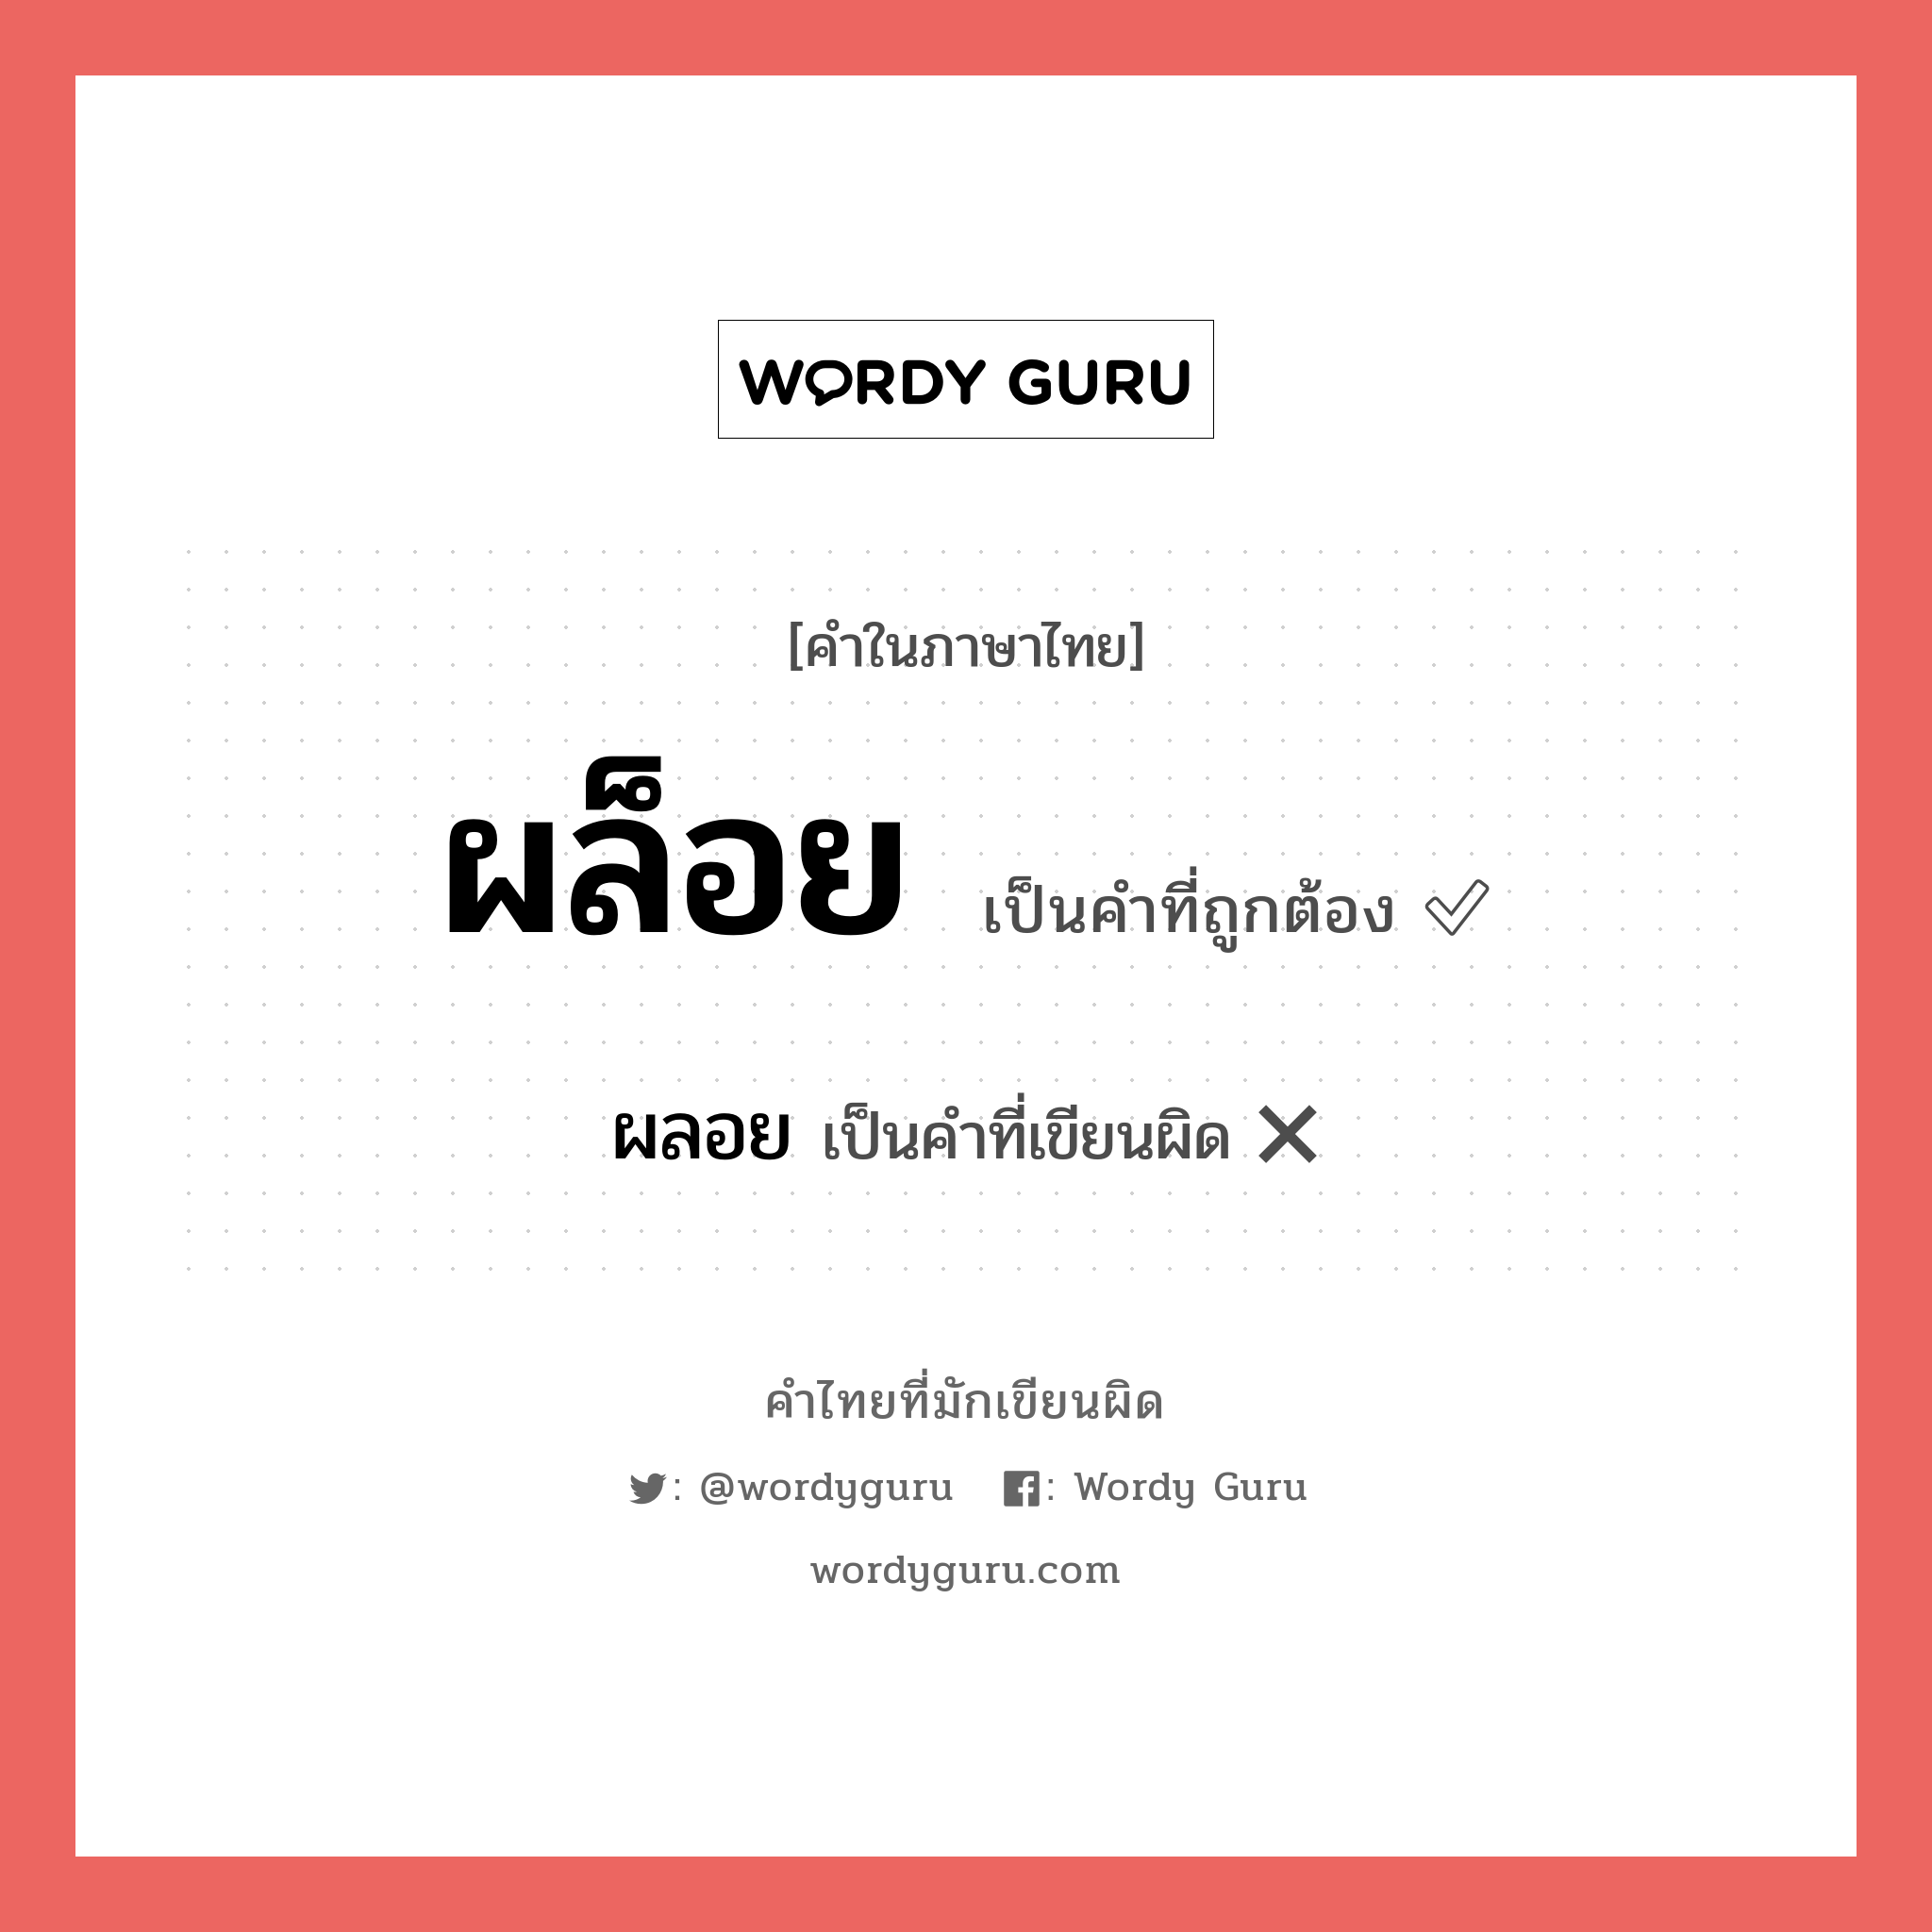 ผลอย หรือ ผล็อย คำไหนเขียนถูก?, คำในภาษาไทยที่มักเขียนผิด ผลอย คำที่ผิด ❌ ผล็อย